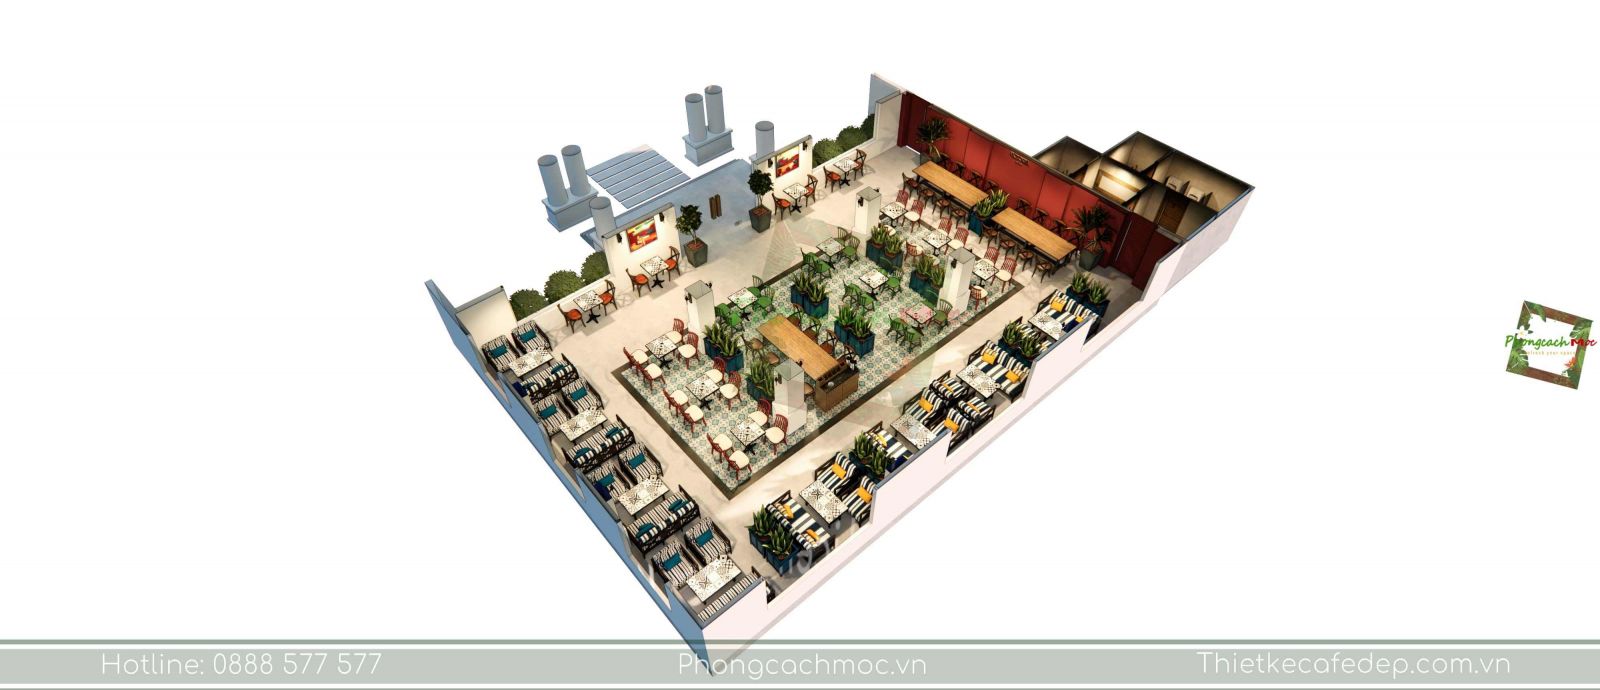 thiết kế quán cafe layout không gian phòng lạnh